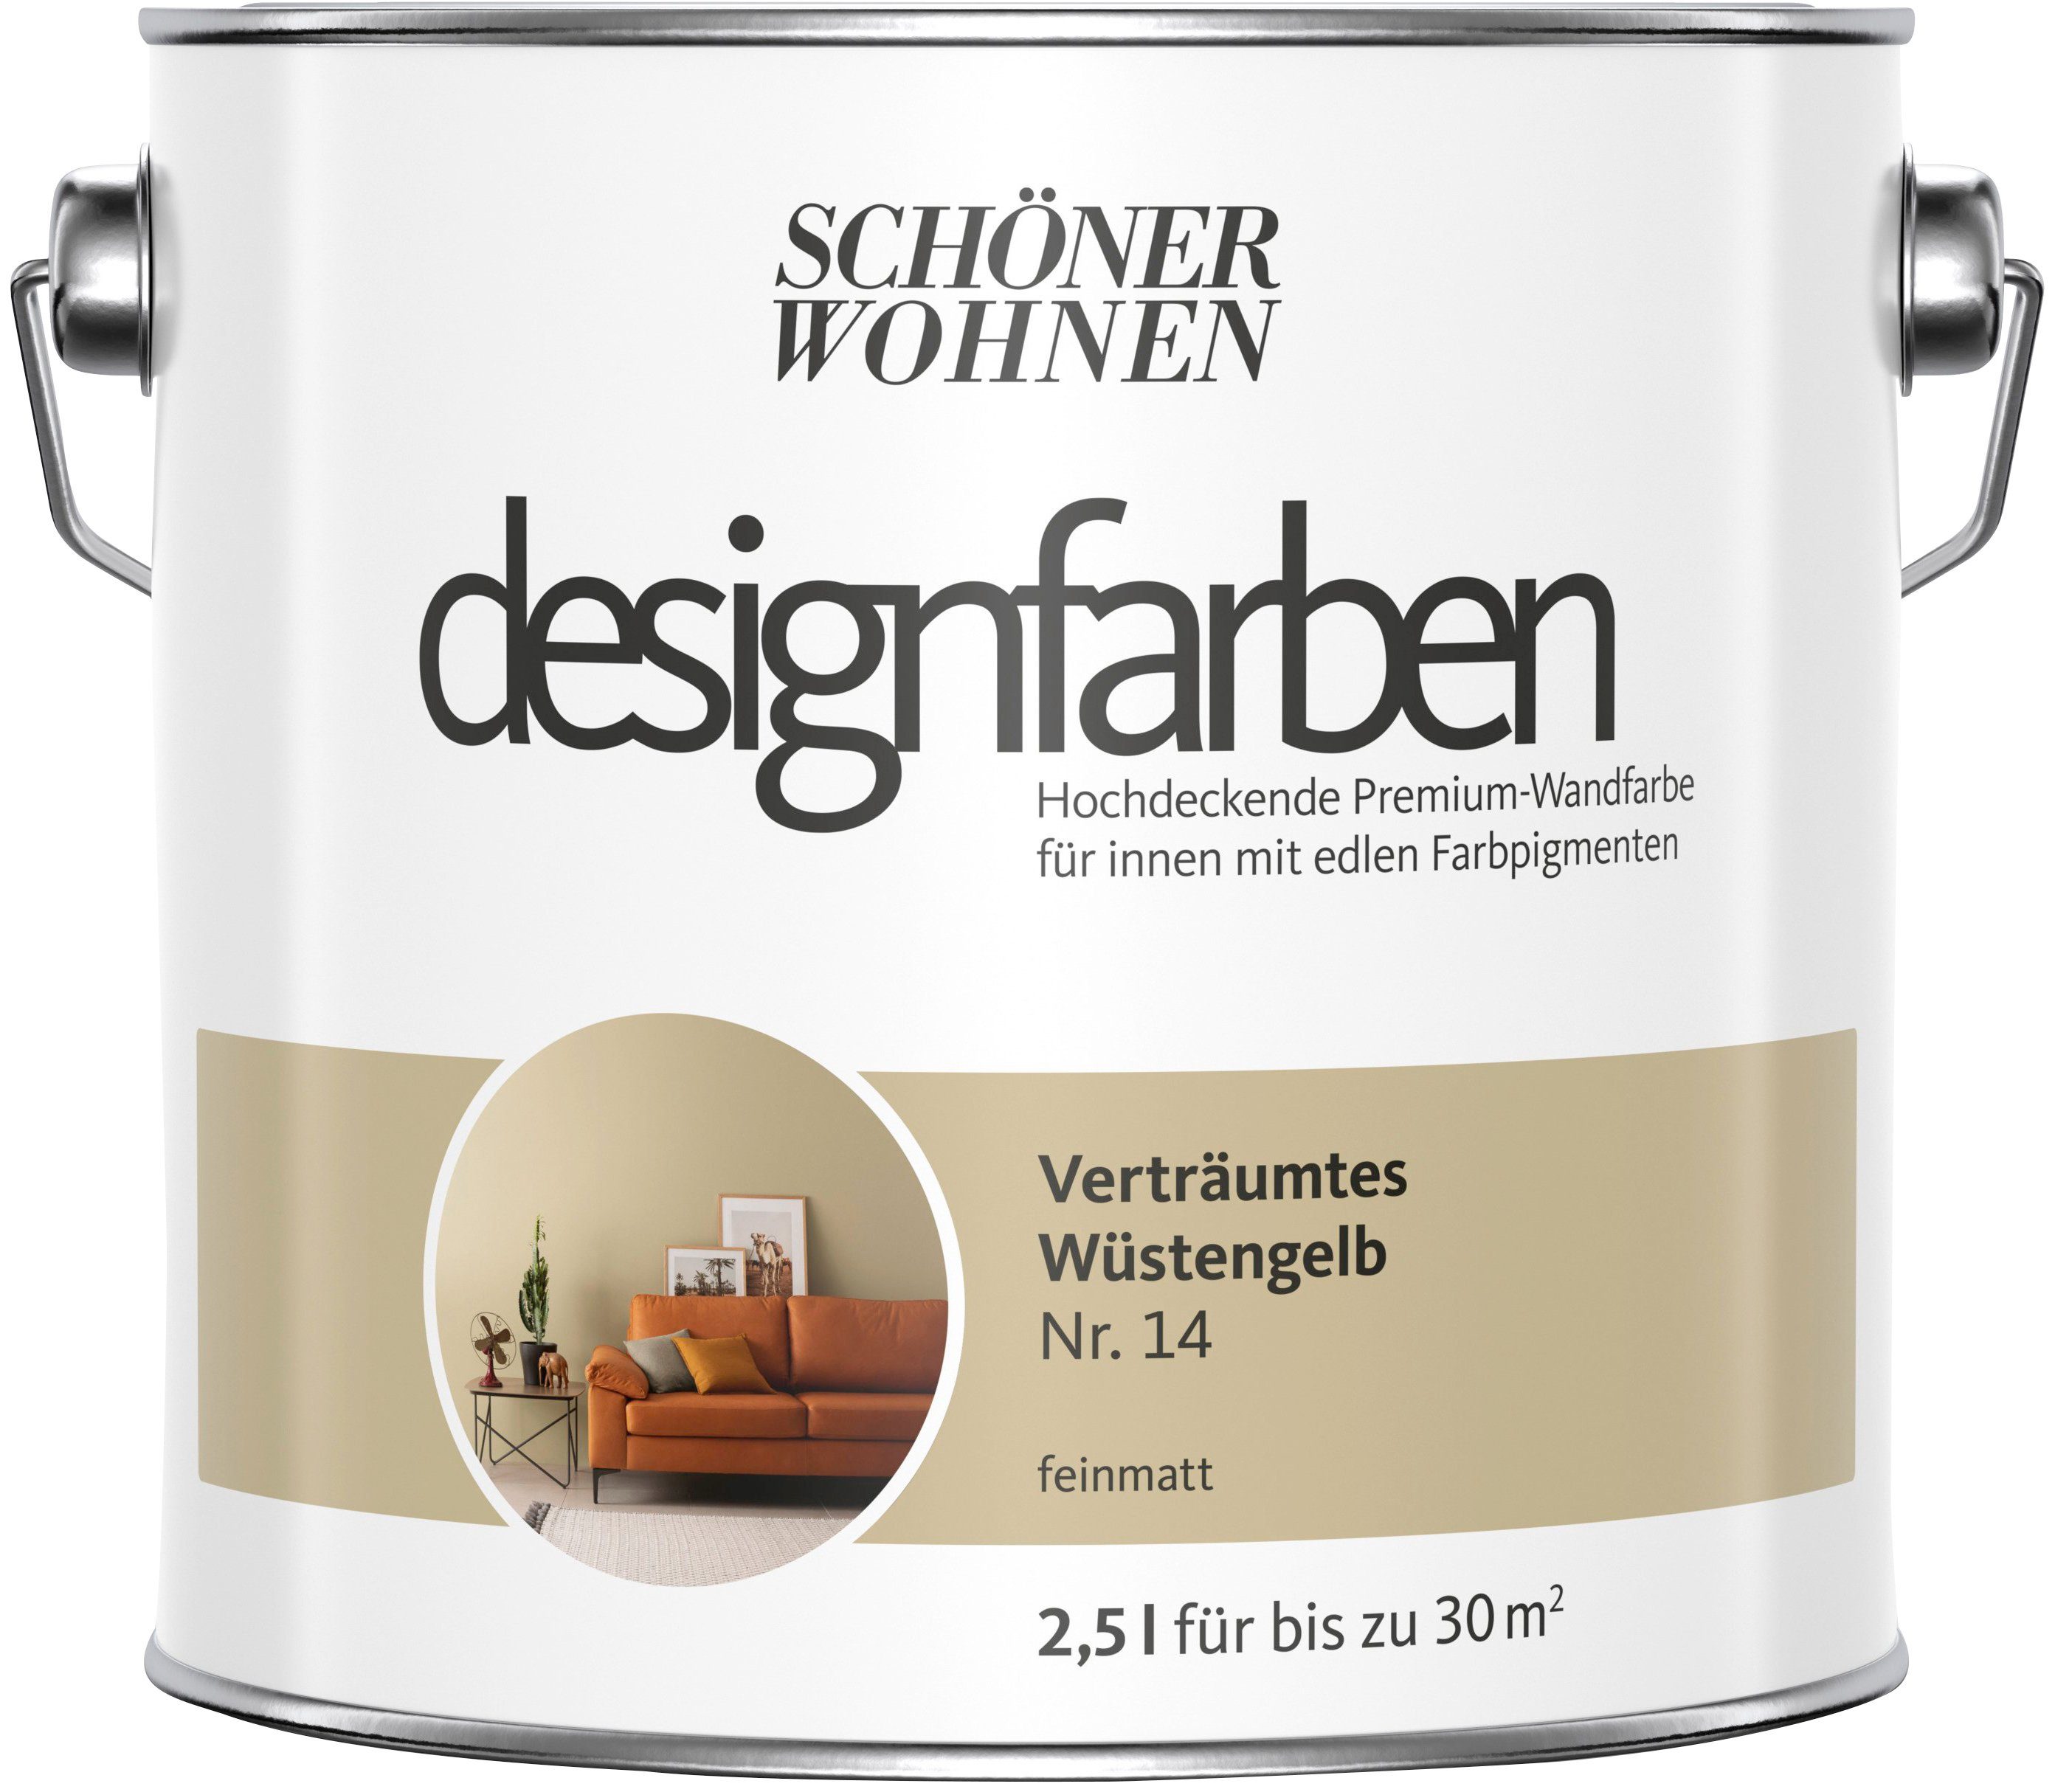 Premium-Wandfarbe SCHÖNER Designfarben, FARBE Nr. hochdeckende und Wand- WOHNEN Wüstenbeige 14, Verträumtes Deckenfarbe